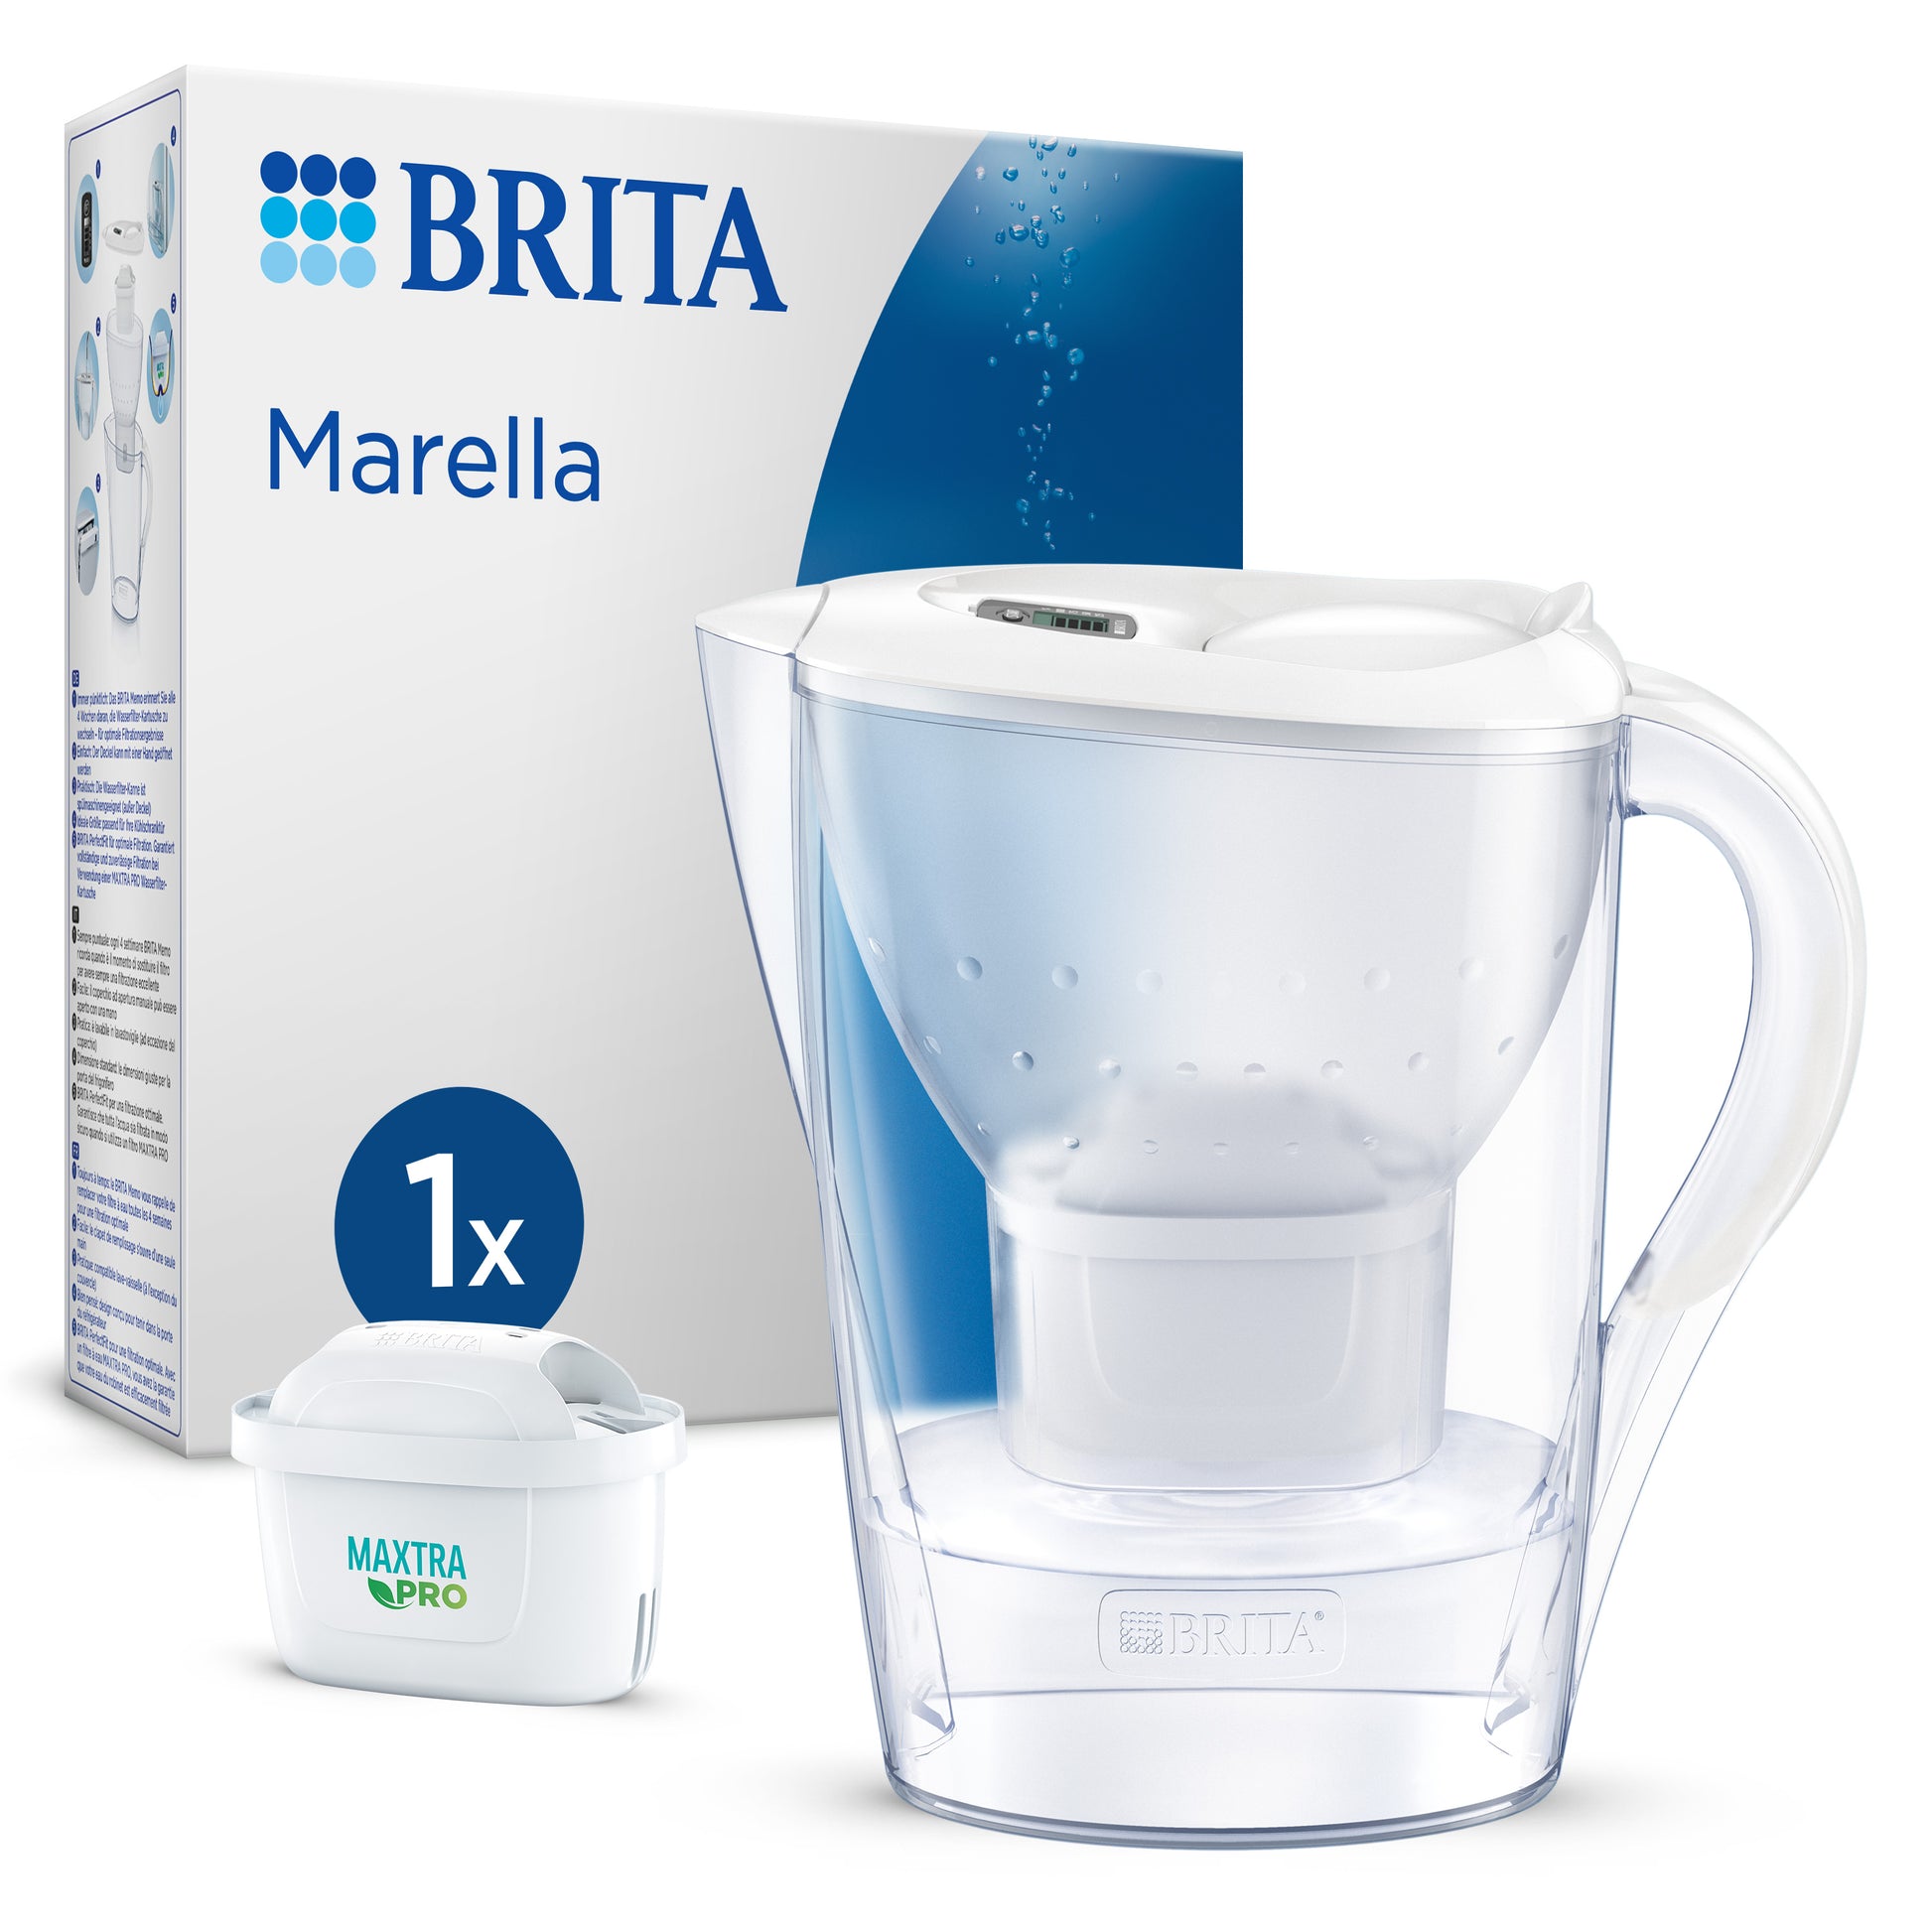 Caraffa filtrante Acqua Marella Bianca (2,4 L) Filtro Maxtra Pro All-in-1,  Brita